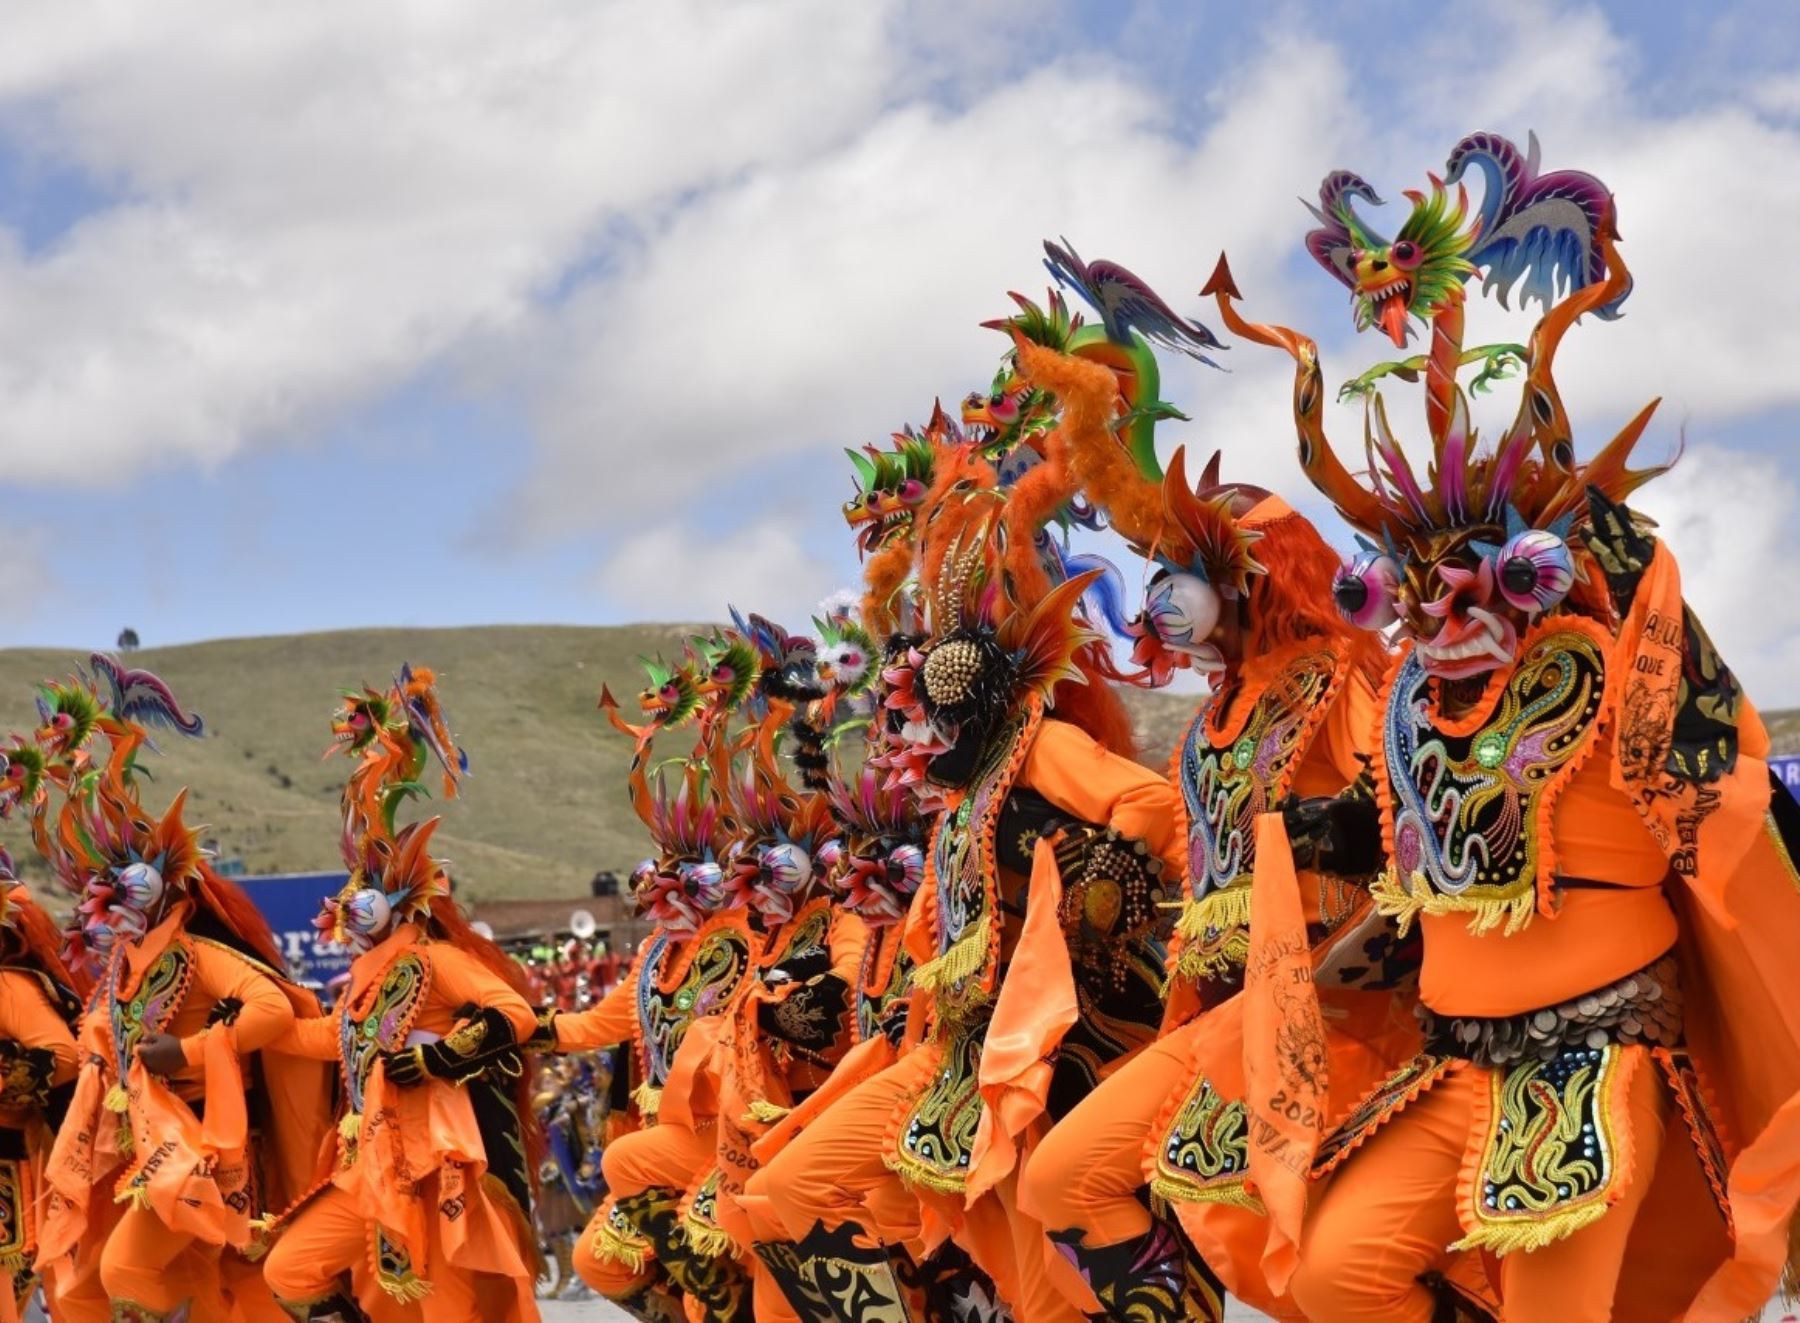 Esta tarde se decidirá en Puno si se realiza o no los concursos de danzas y trajes de luces que se realizan en la Festividad de la Virgen de la Candelaria. Foto: Juan Humberto Ccopa